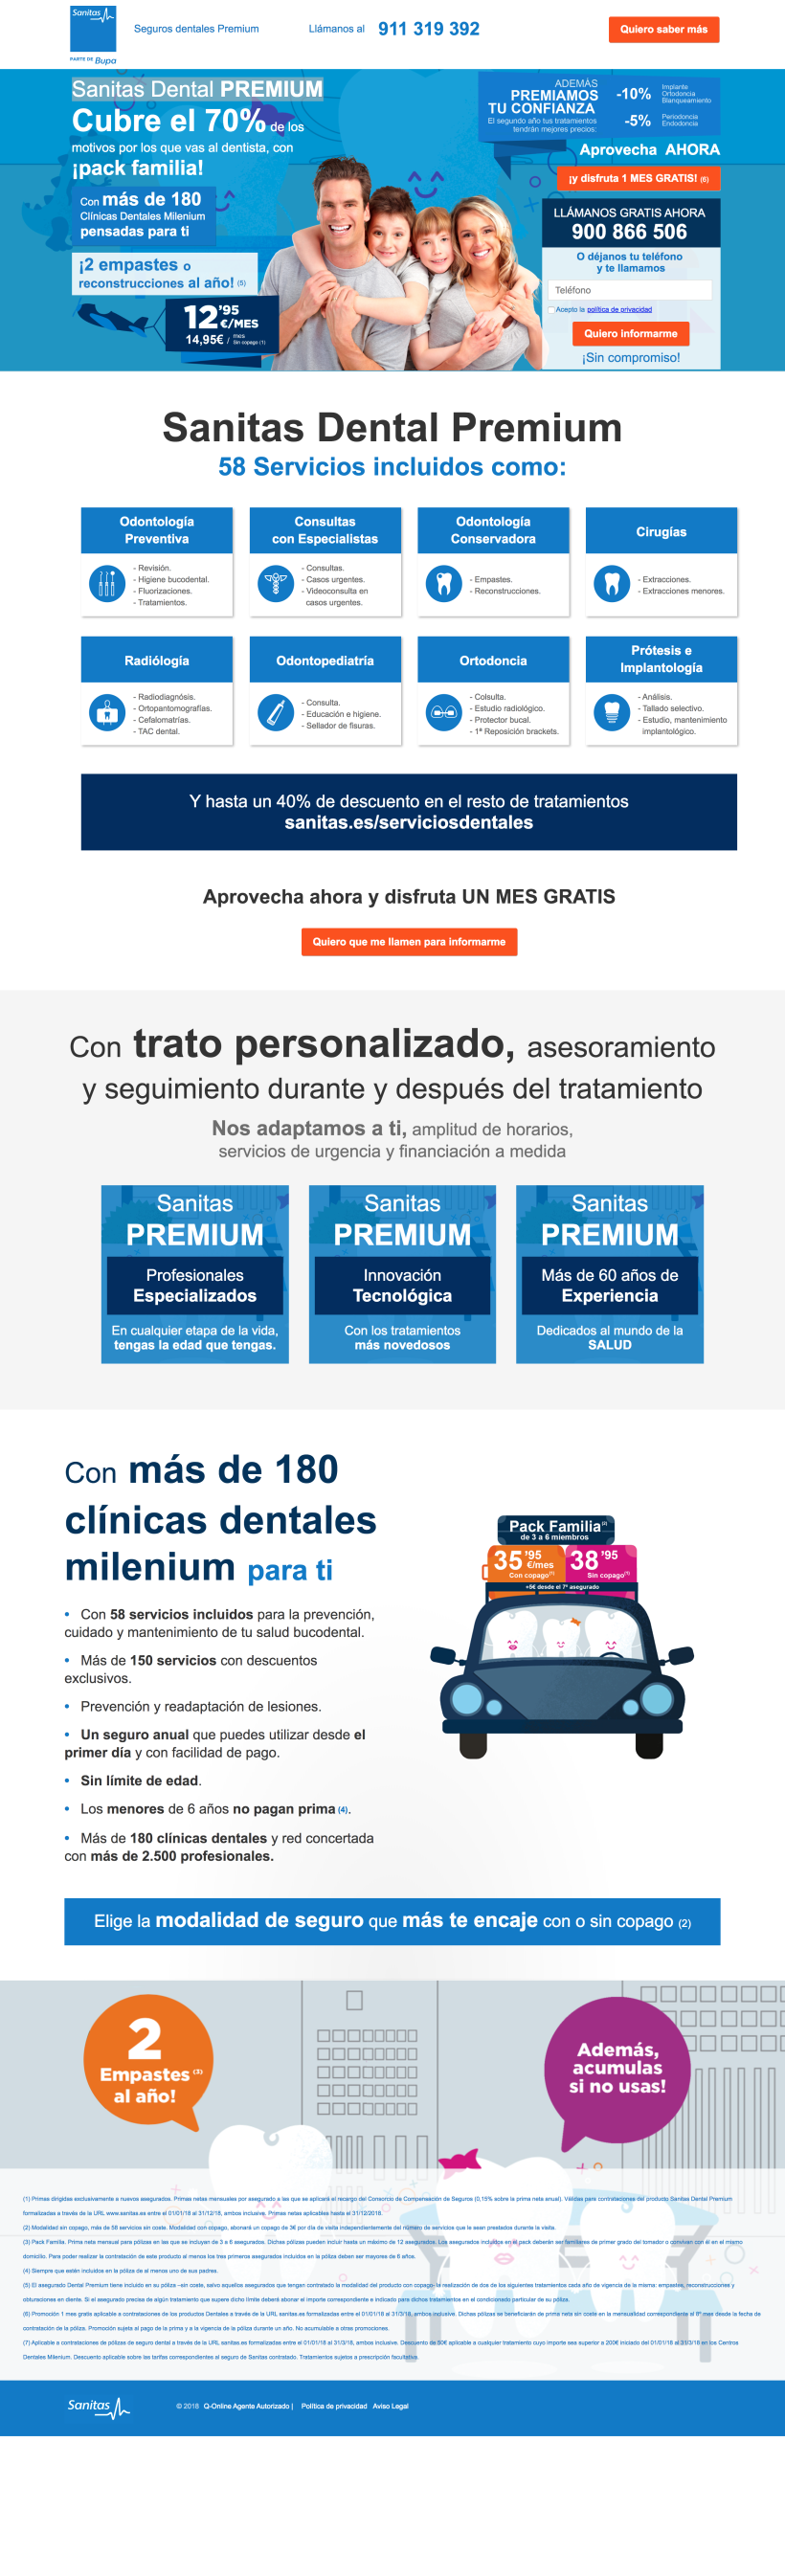 Landin page para "Sanitas" - Sanitas Dental PREMIUM - Responsive design 0